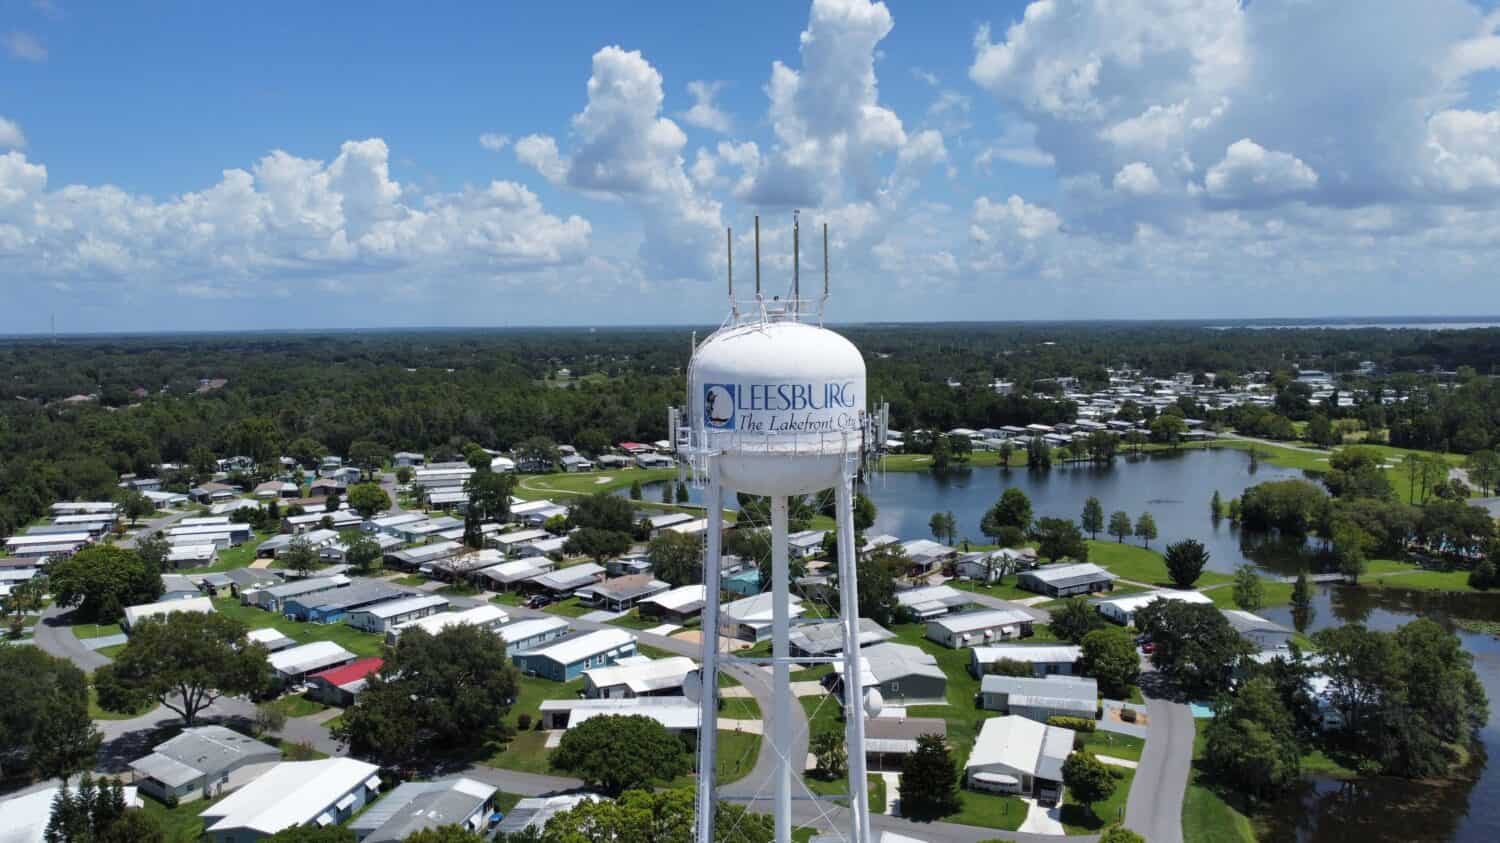 LEESBURG, USA - 23 luglio 2022: Una ripresa aerea della torre dell'acqua a Leesburg, Florida sotto le nuvole.  Uno dei luoghi meno soggetti a uragani in Florida 